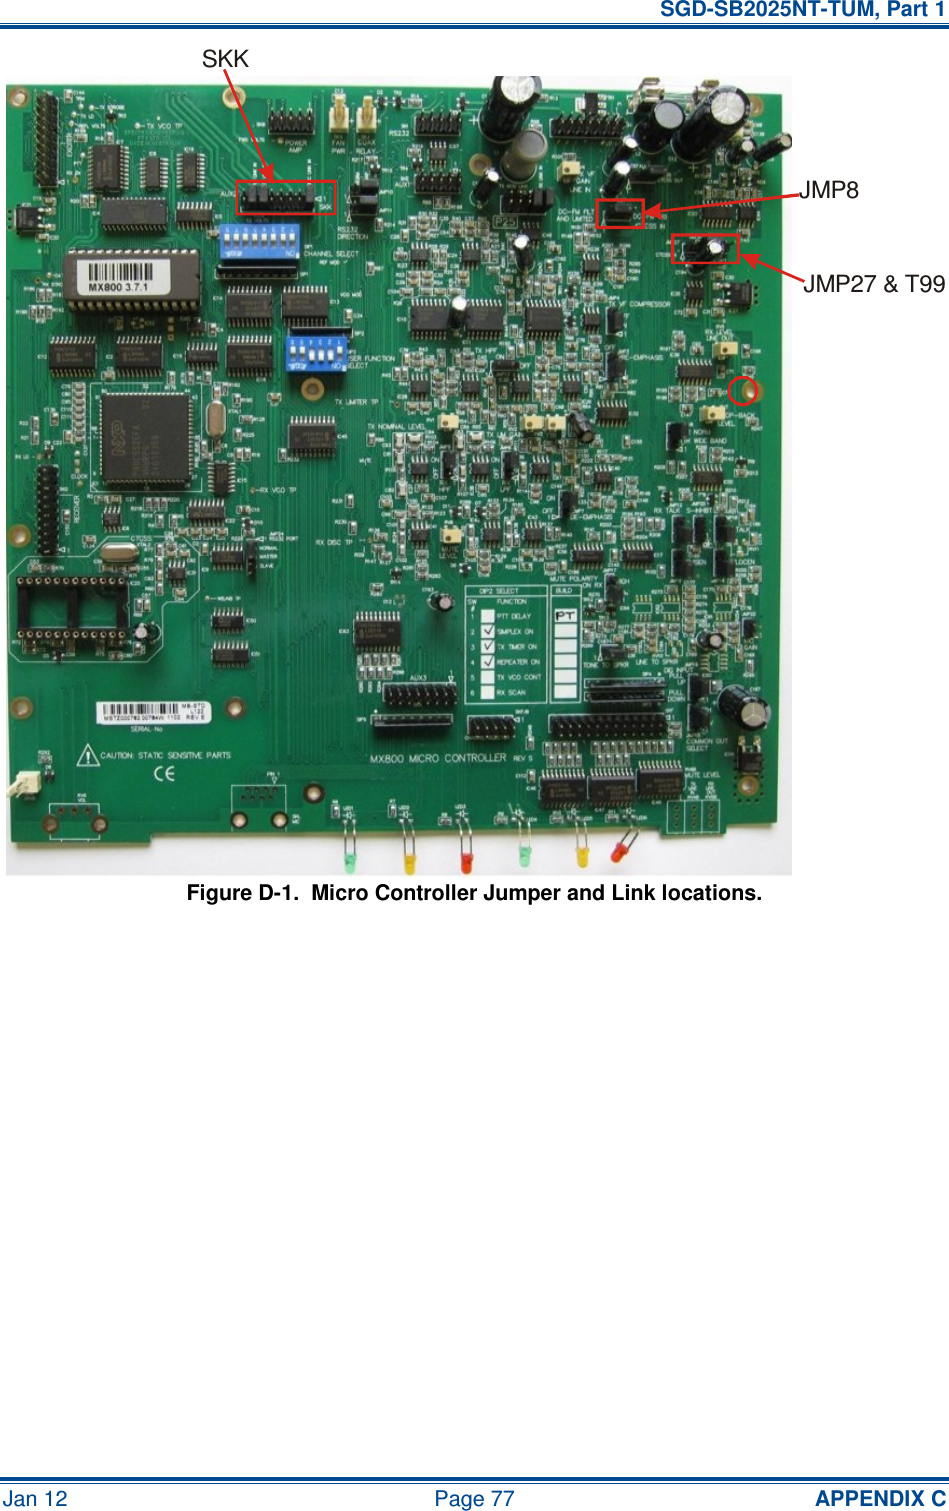   SGD-SB2025NT-TUM, Part 1 Jan 12  Page 77  APPENDIX C Figure D-1.  Micro Controller Jumper and Link locations.       JMP8JMP27 &amp; T99SKK